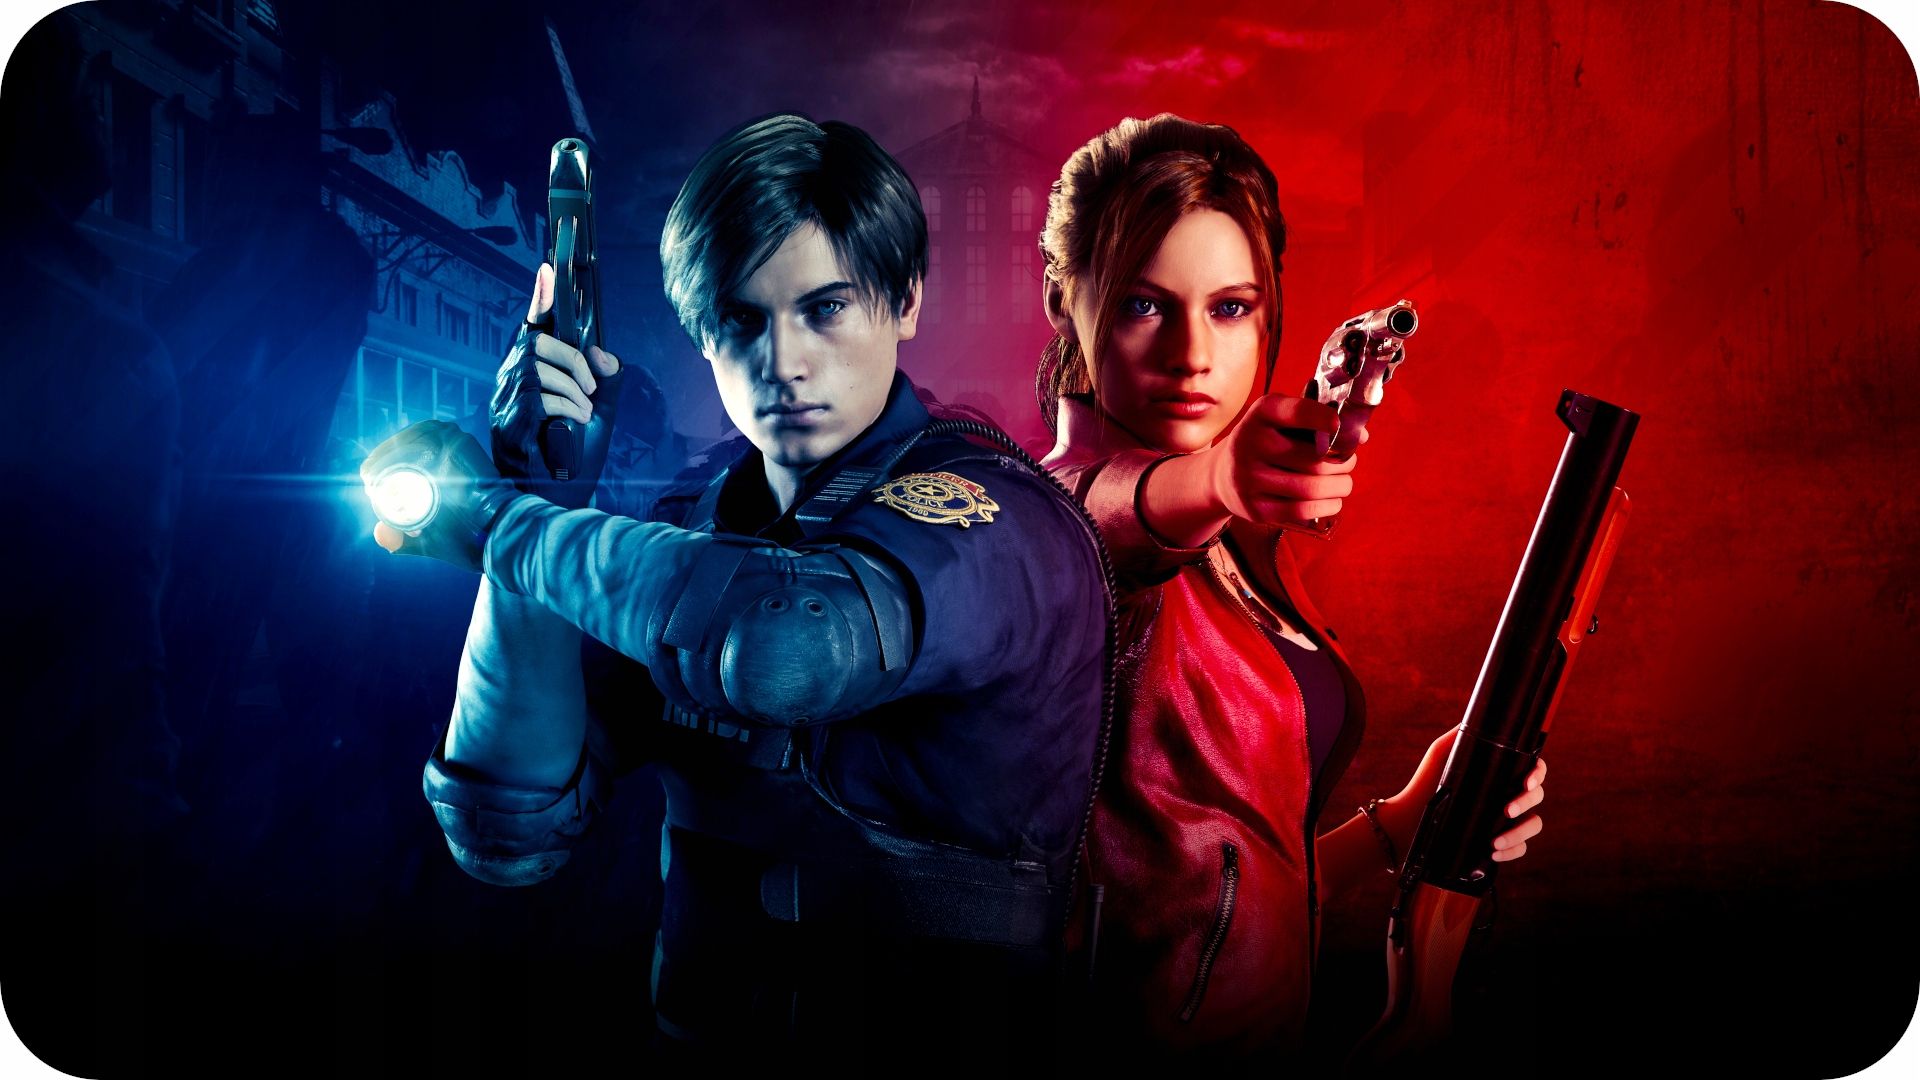 Xbox One Resident Evil 2 Polskie Wdyanie Po Polsku Pl szybka wysyłka